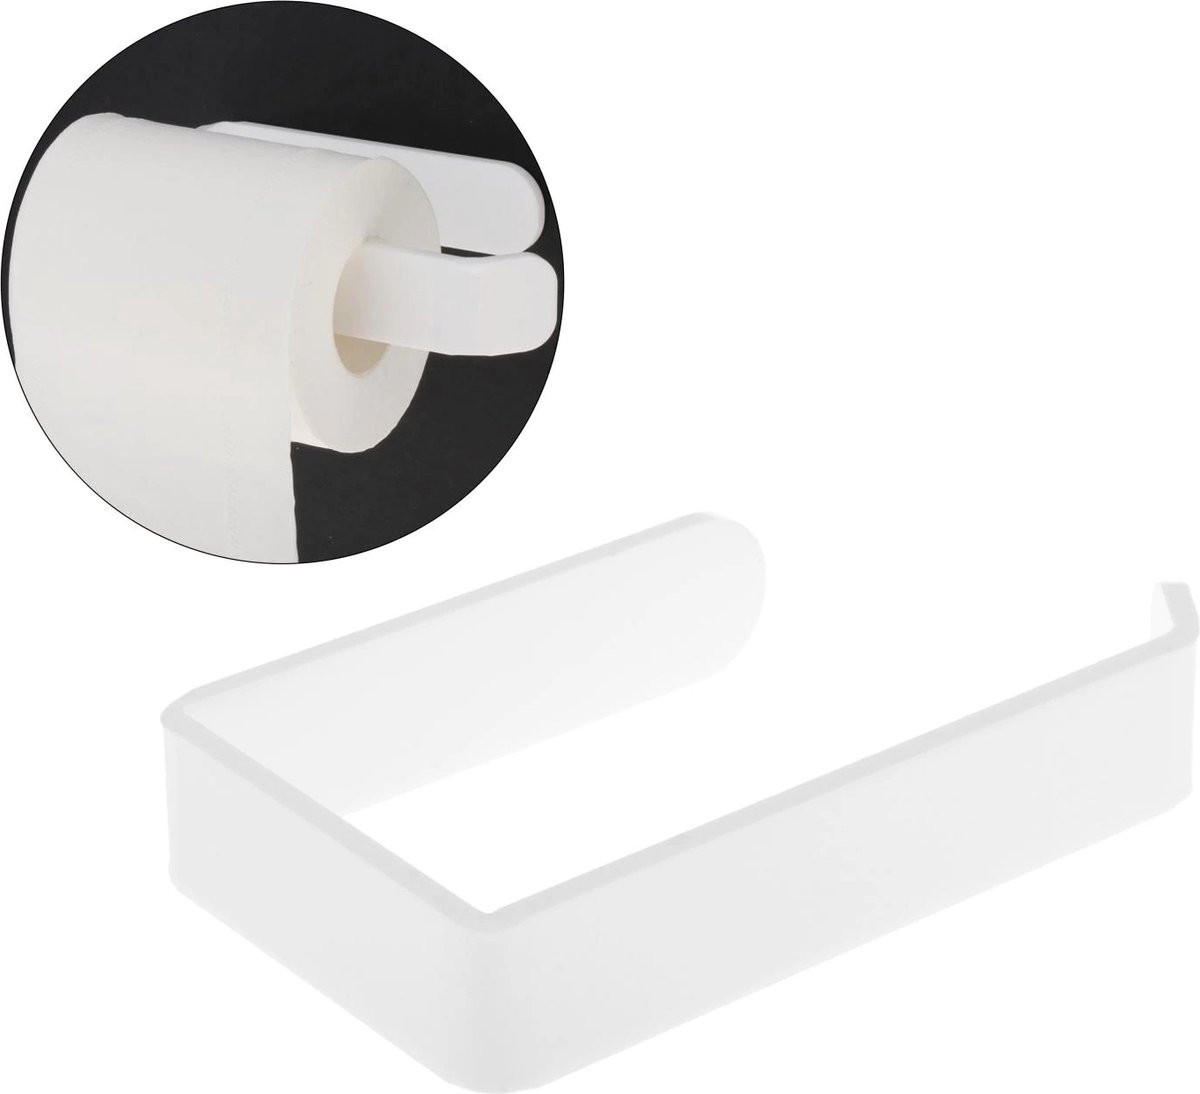 Toiletrolhouder - Keuken Rolhouder - Wandmontage - Moderne Witte Hanger - Wc-Houder - Zelfklevend - Zelfplakstrips